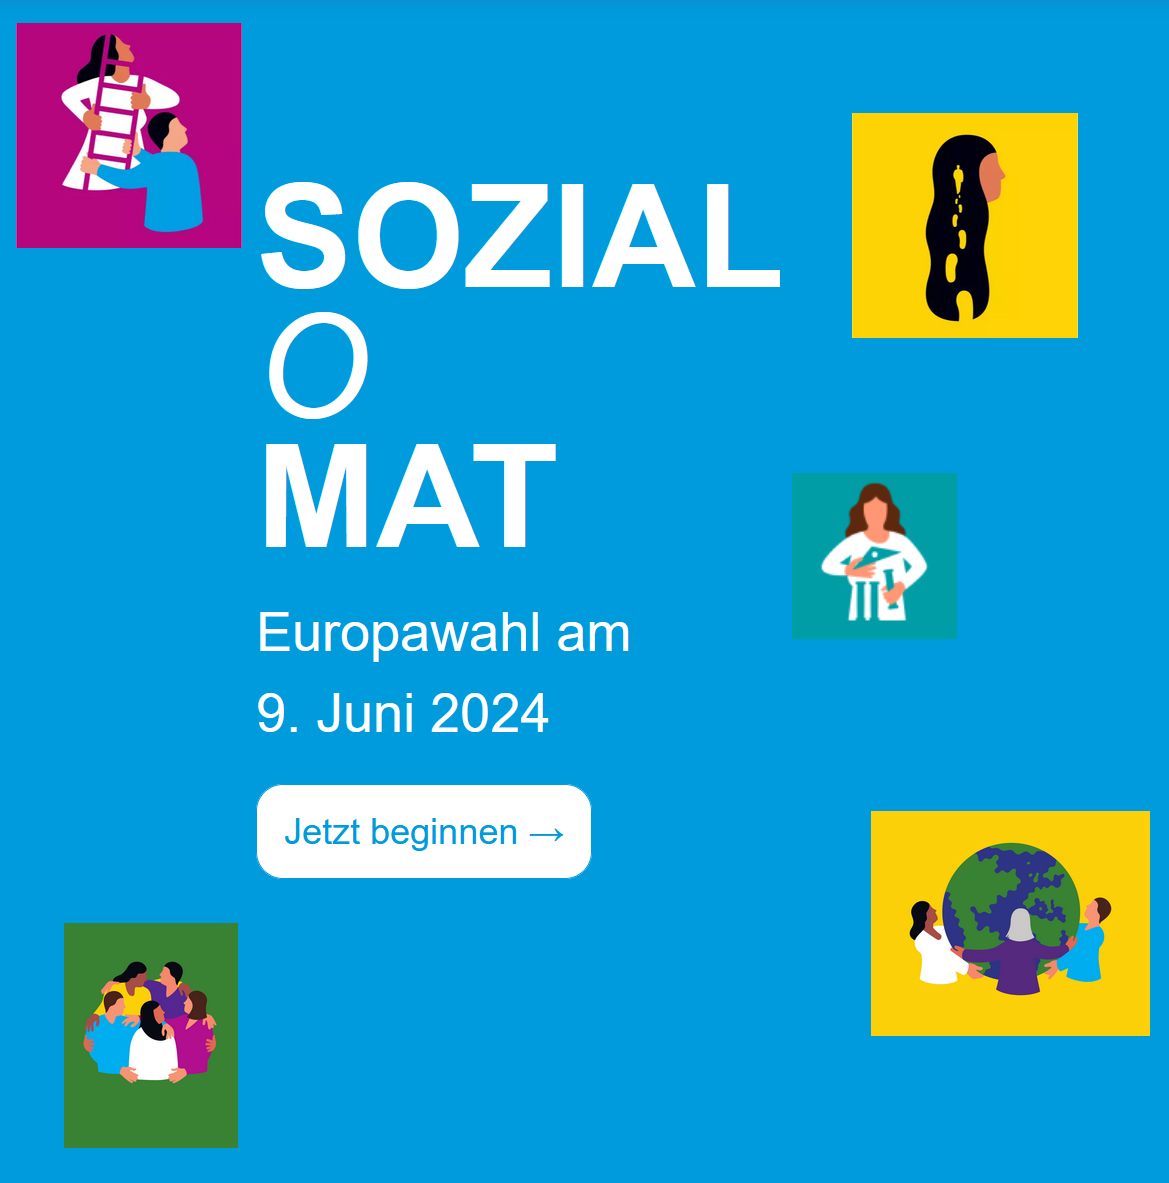 Sozial-o-mat: Europawahl am 9. Juni 2024, Pikotogramme mit Menschen, die sich unterstützen